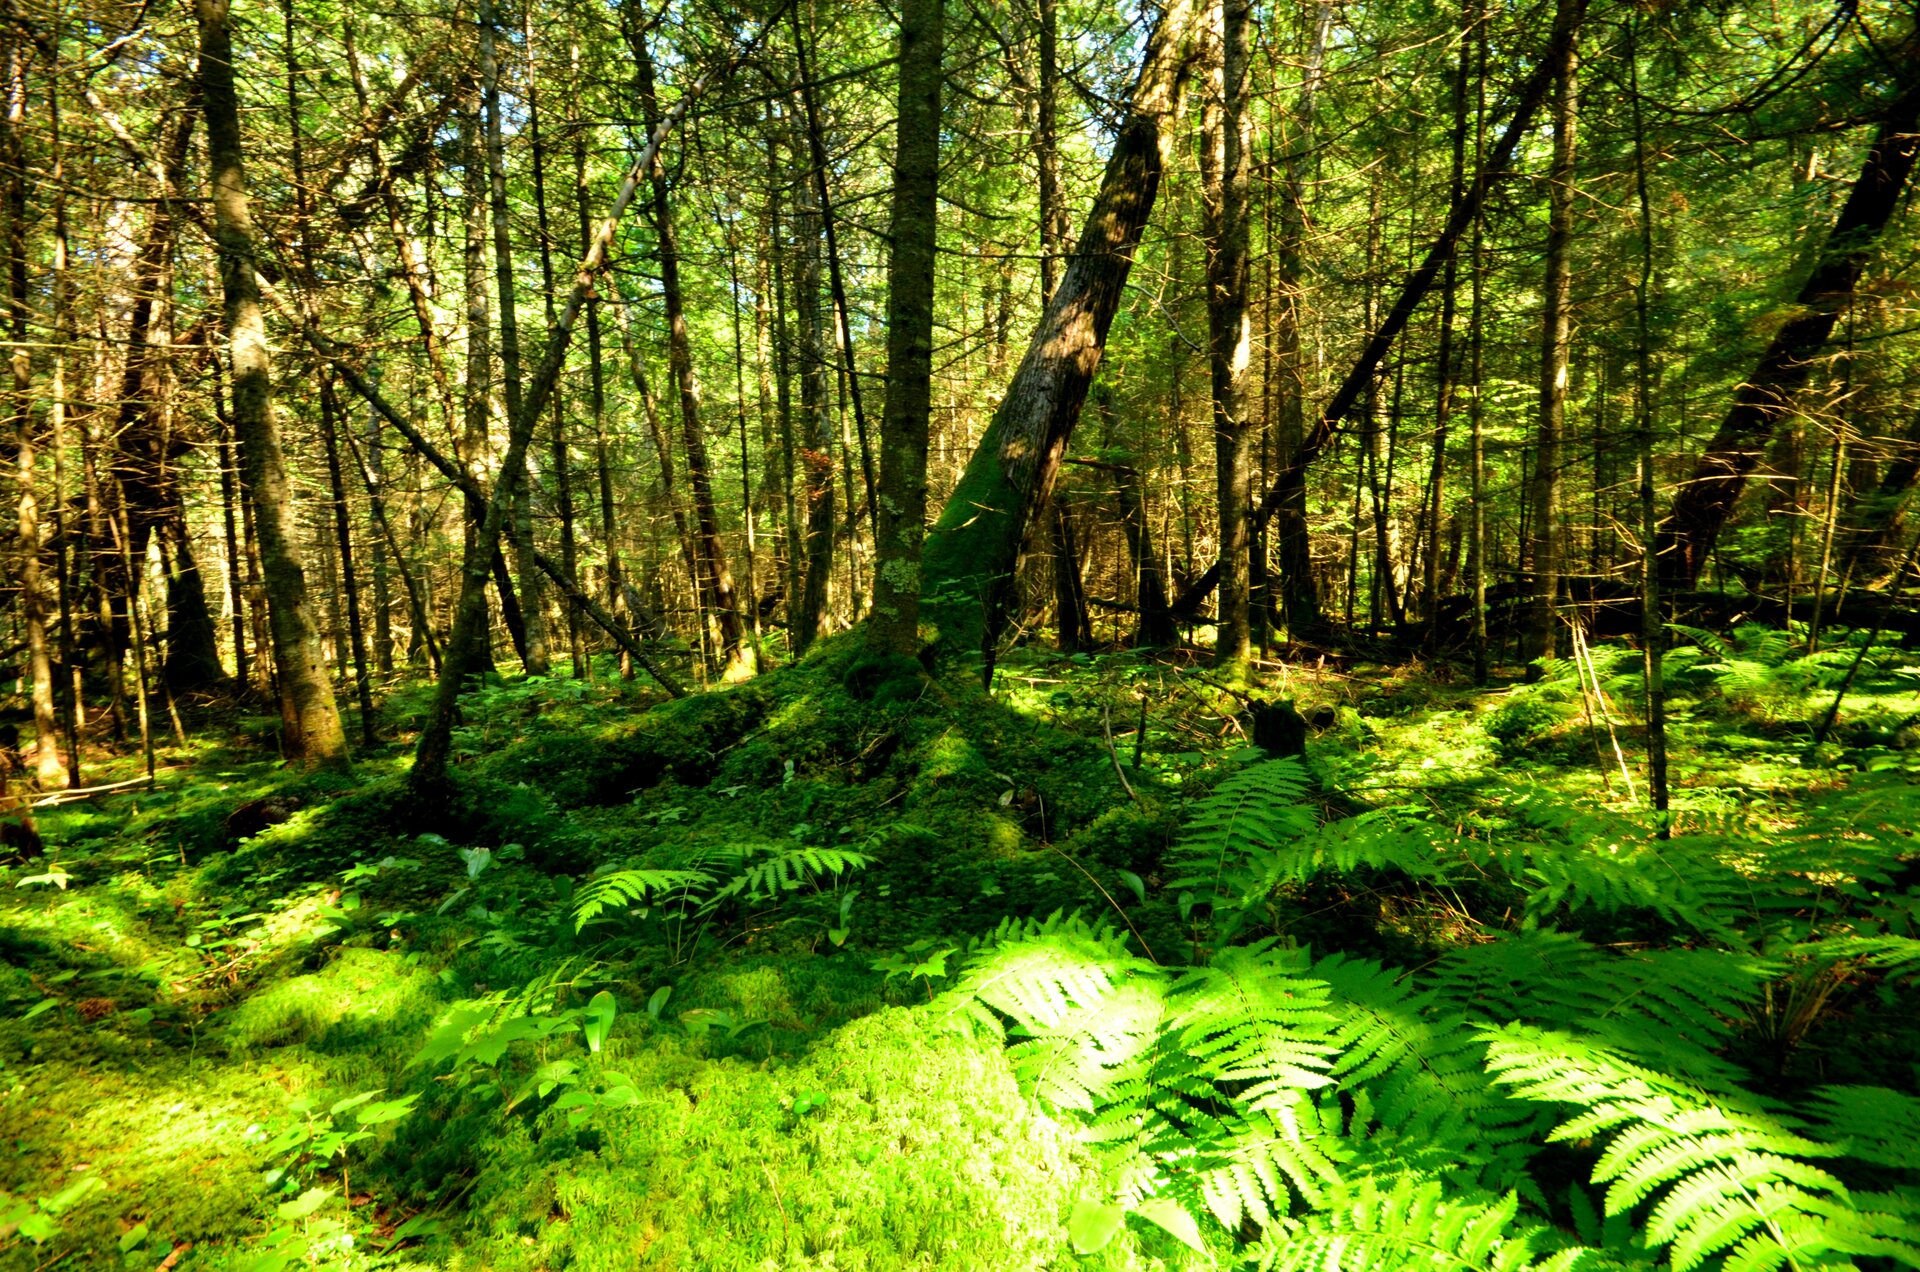 Fotografia przedstawia wnętrze prześwietlonego słońcem lasu. Na pierwszym planie runo leśne.